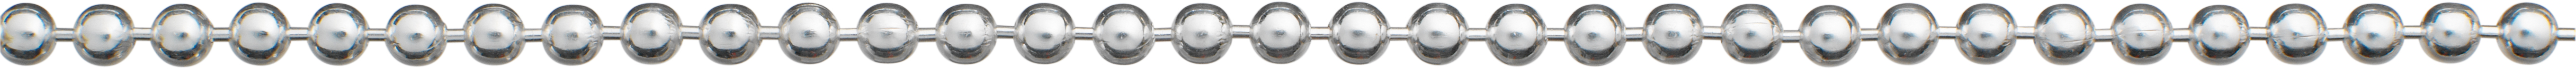 Ball chain silver 925/- Ø 2,50mm